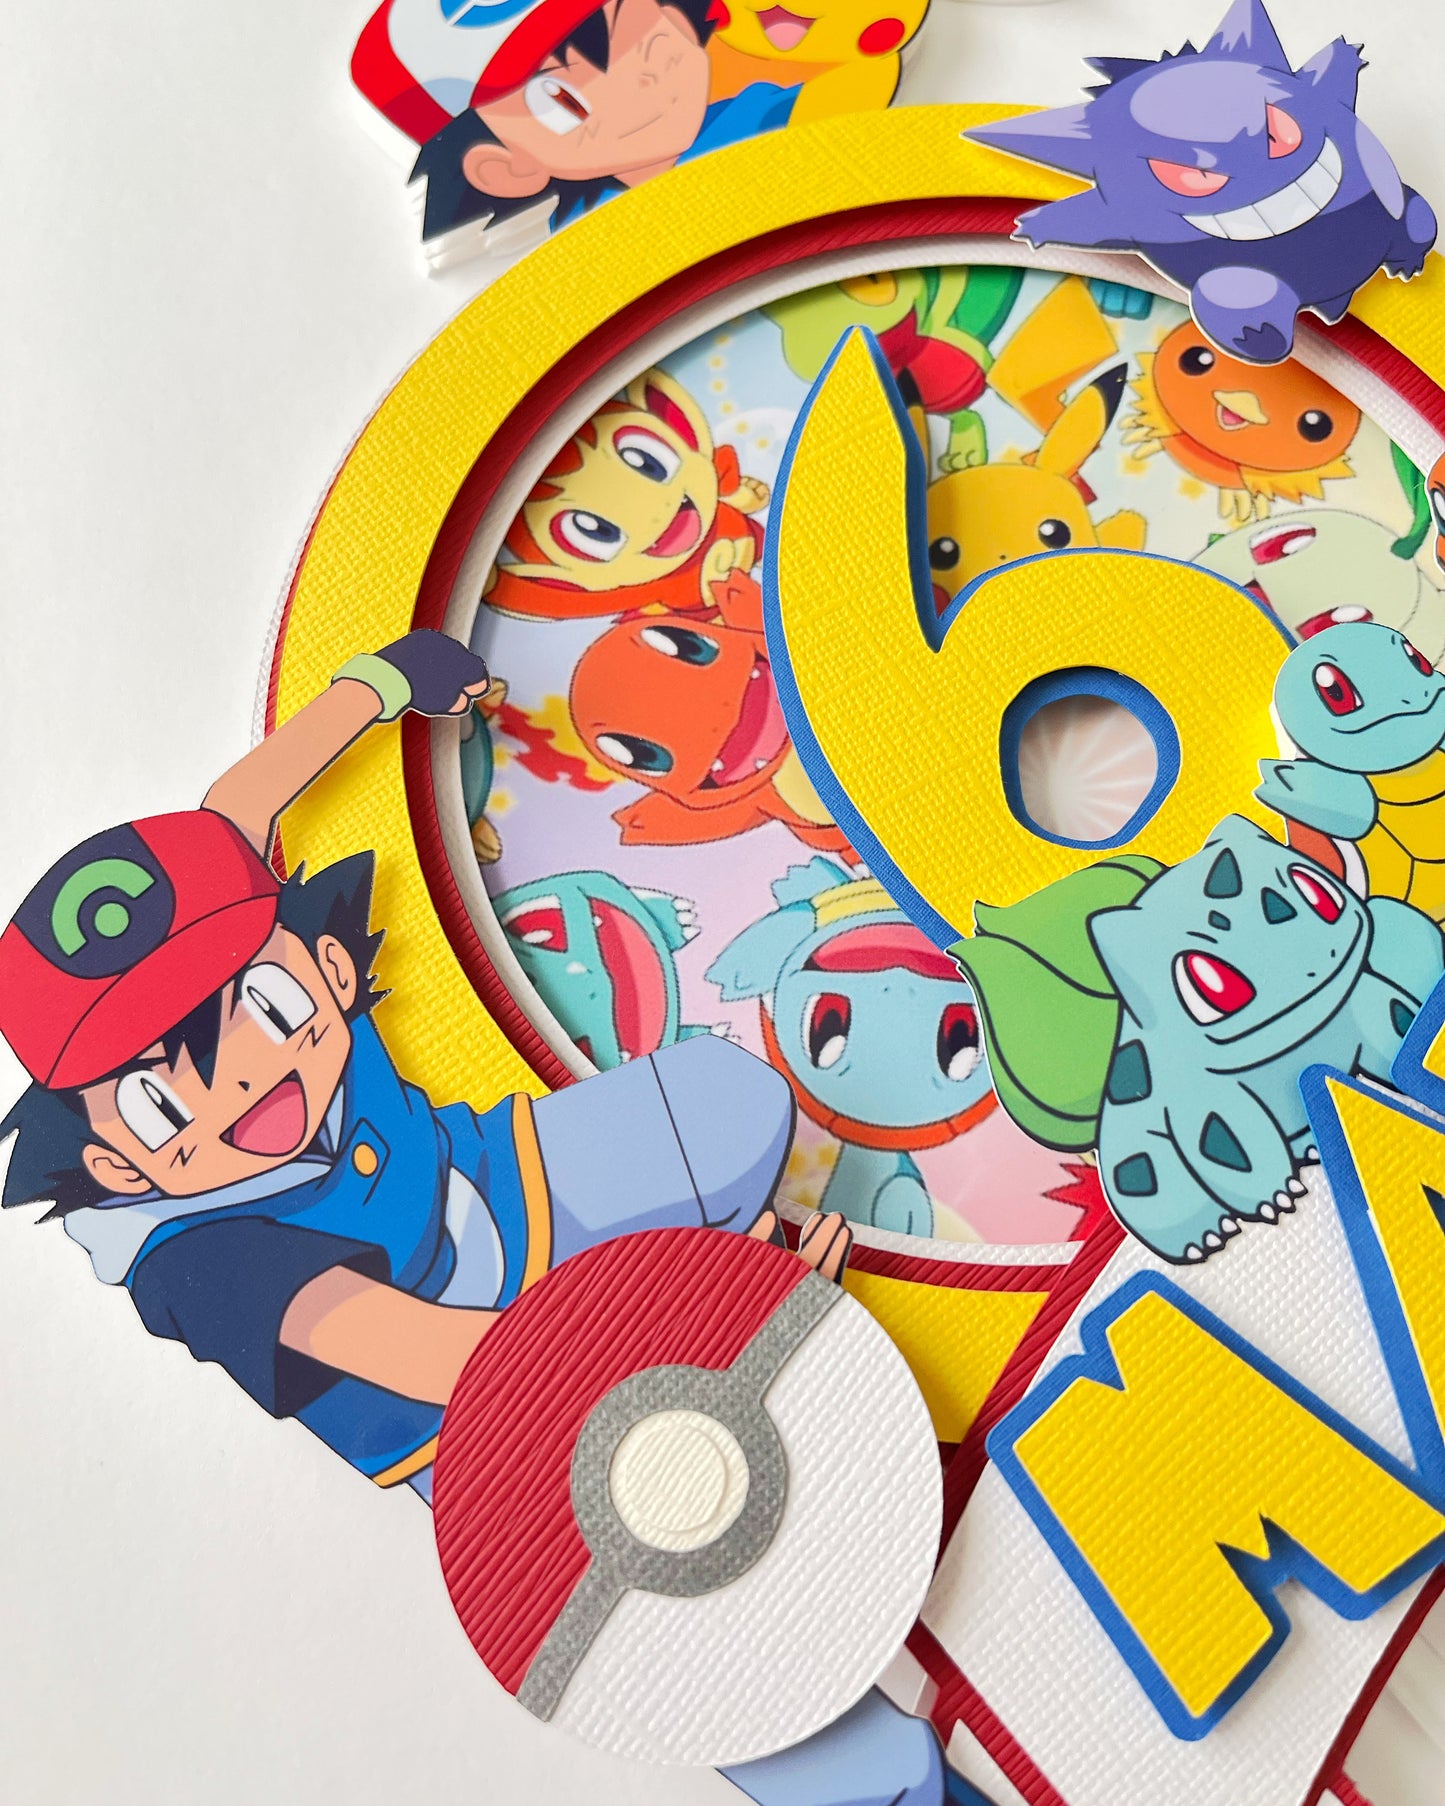 Pokémon themed Party Decorations